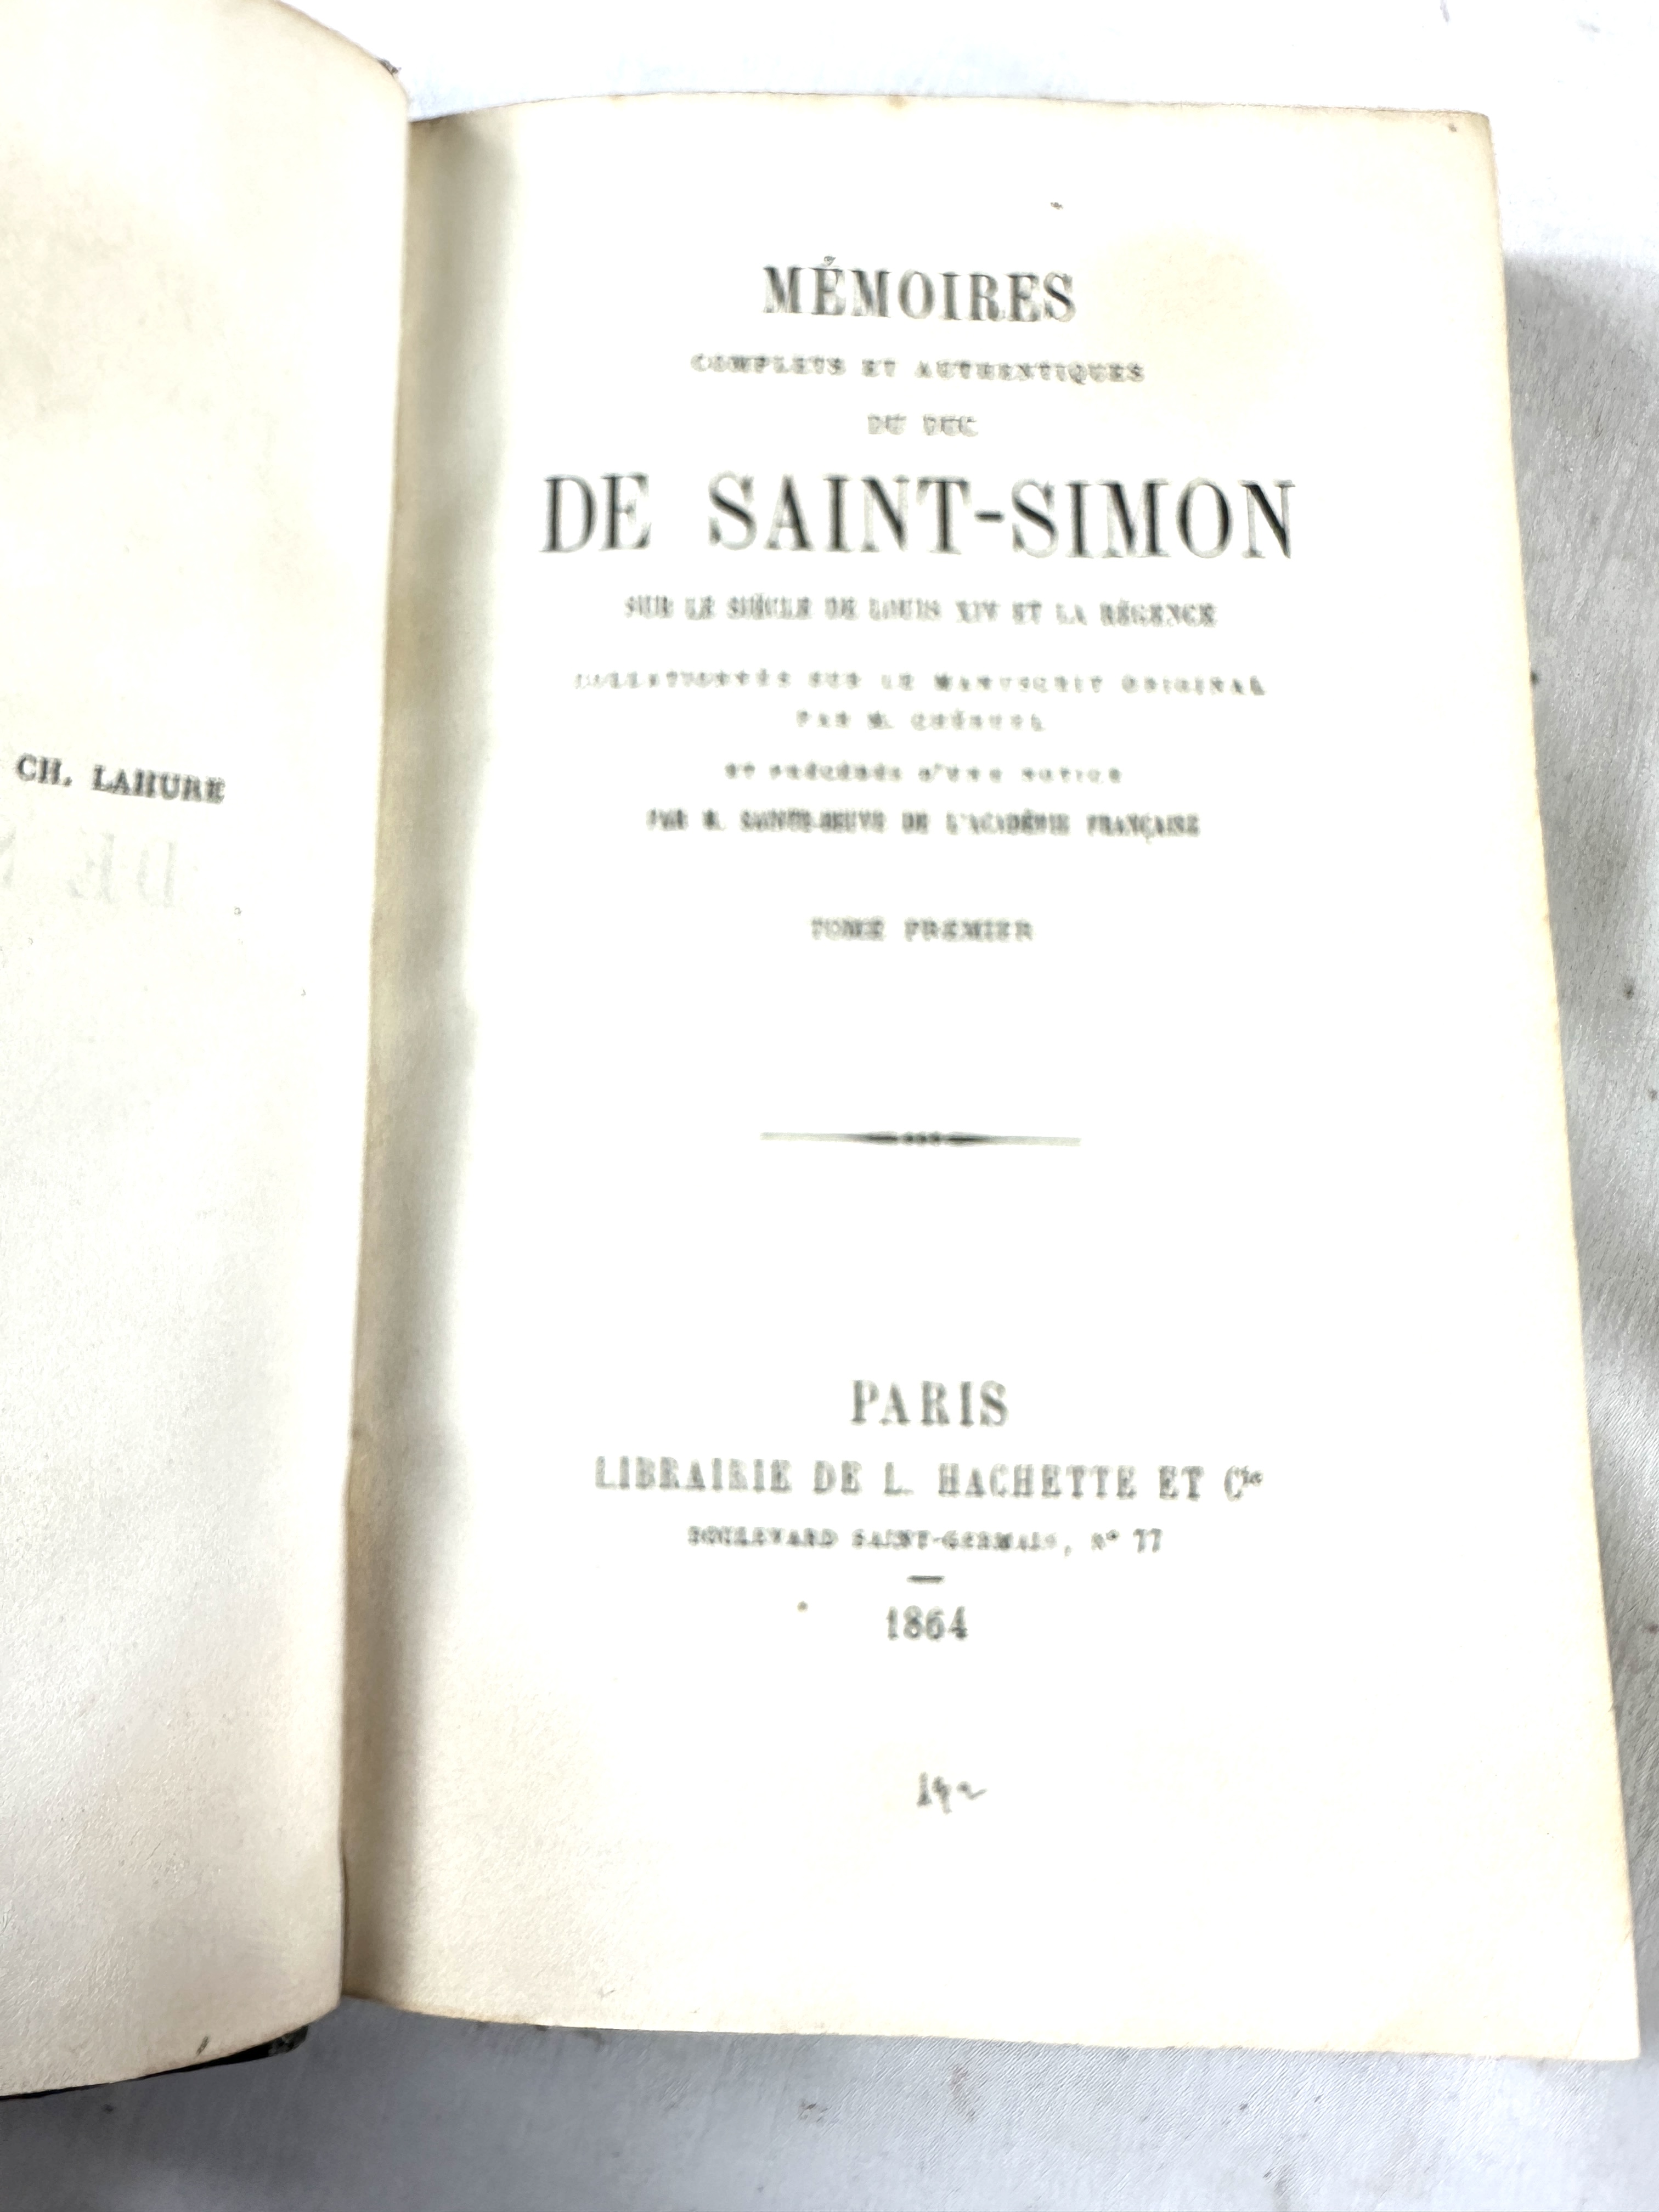 Memoires de Saint-Simon in thirteen volumes, quarter bound - Image 4 of 5